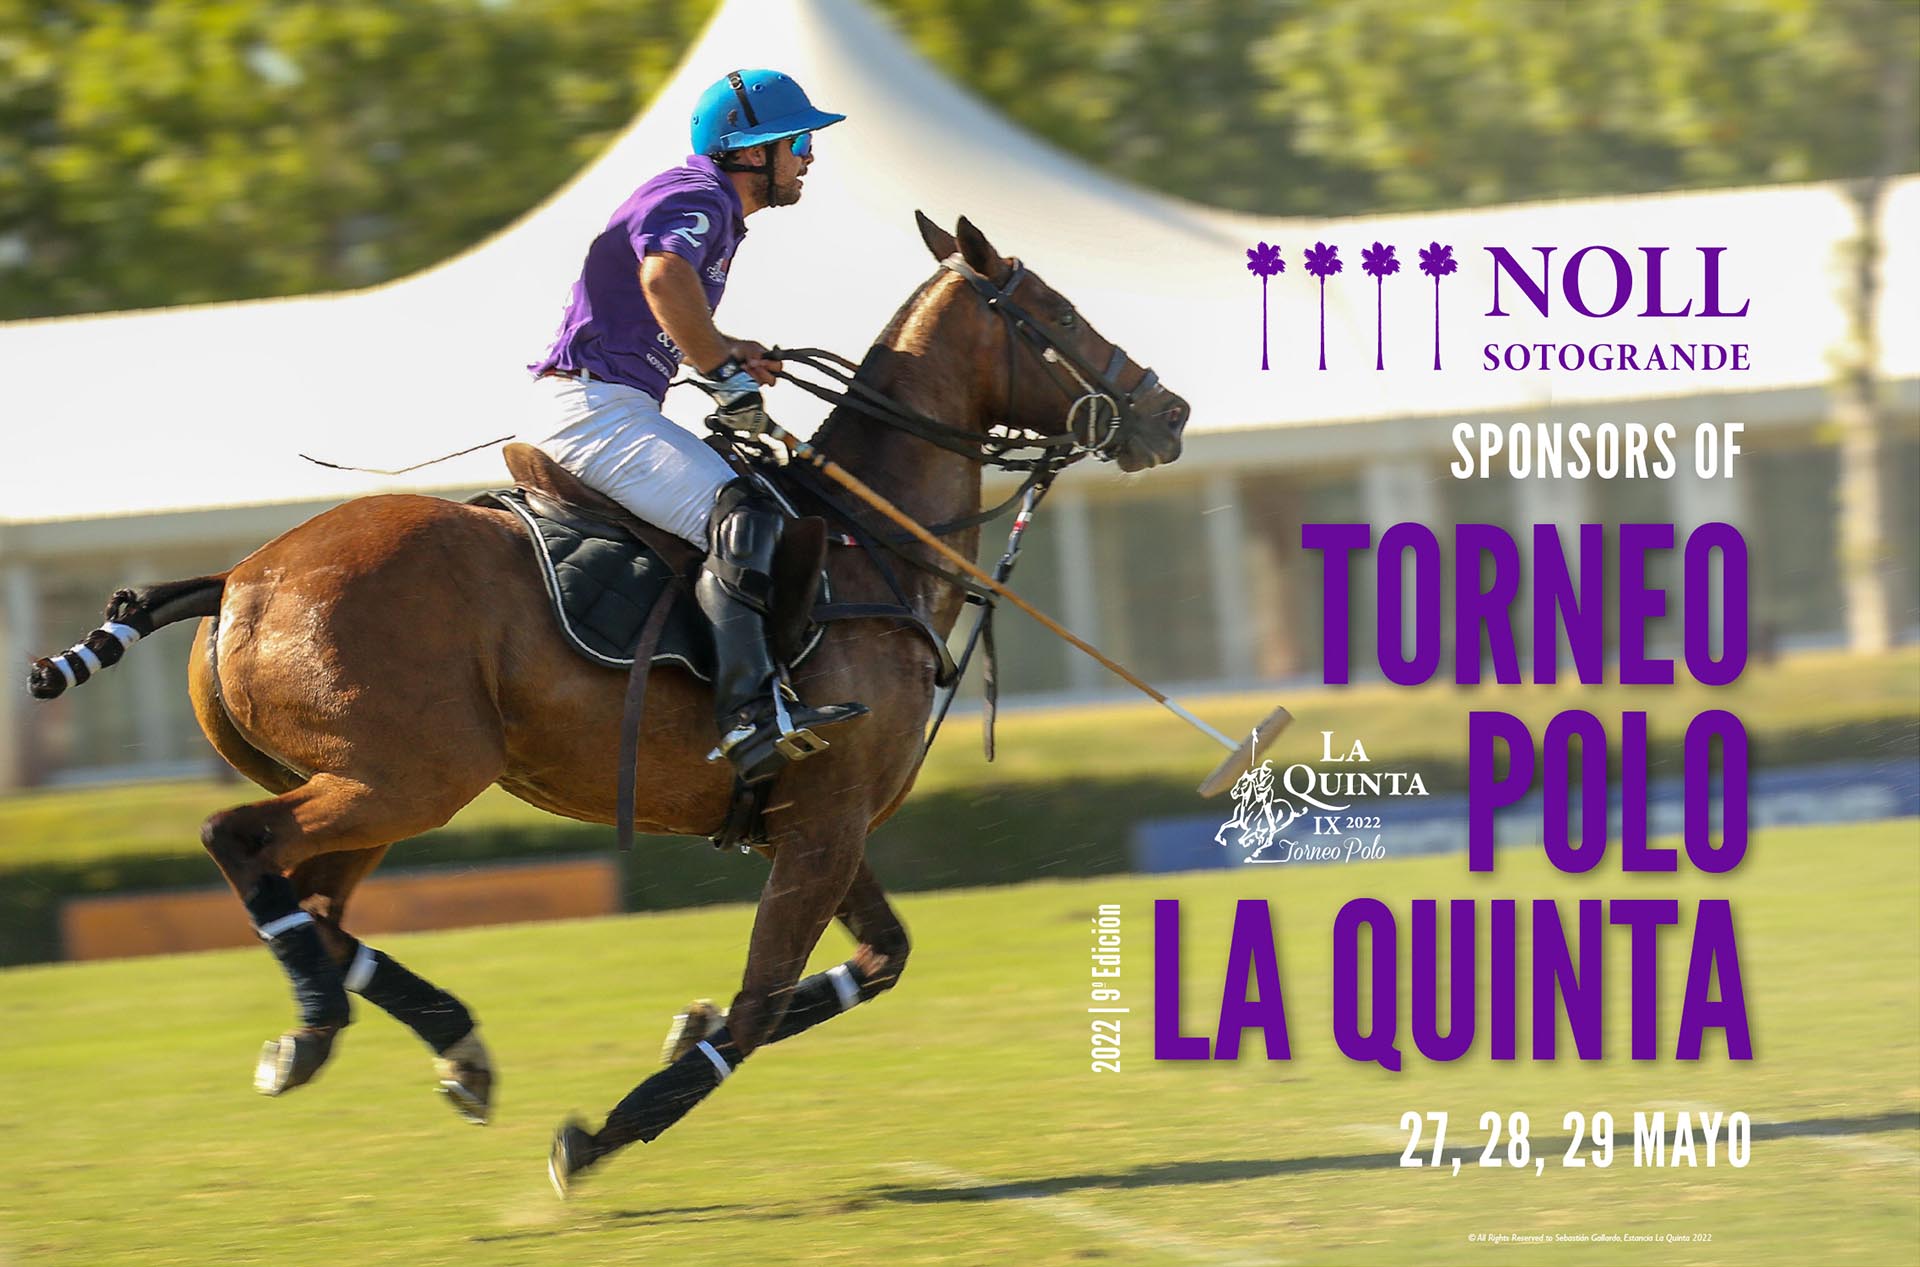 Noll Sotogrande Sponsors Torneo Polo La Quinta 2022